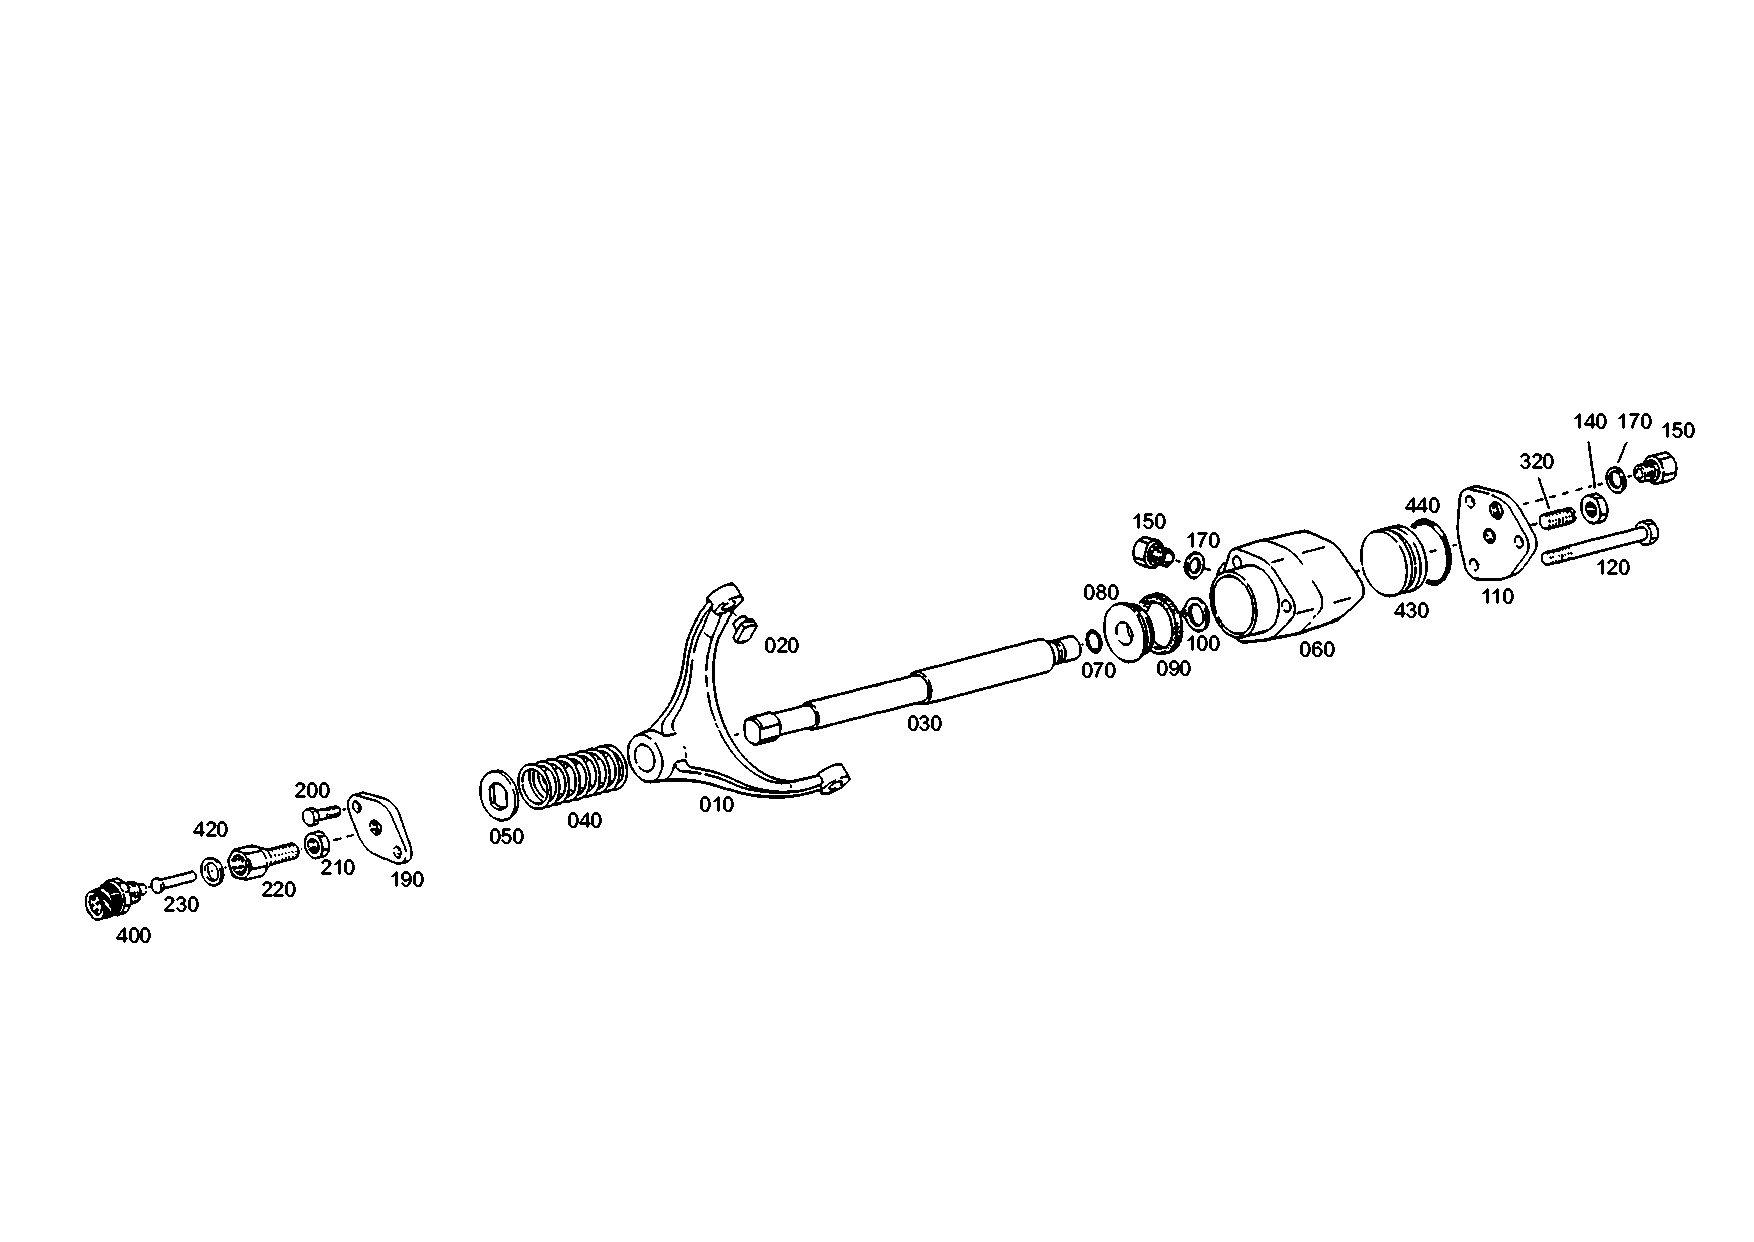 drawing for XUZHOU 171600240007 - PLATE (figure 3)